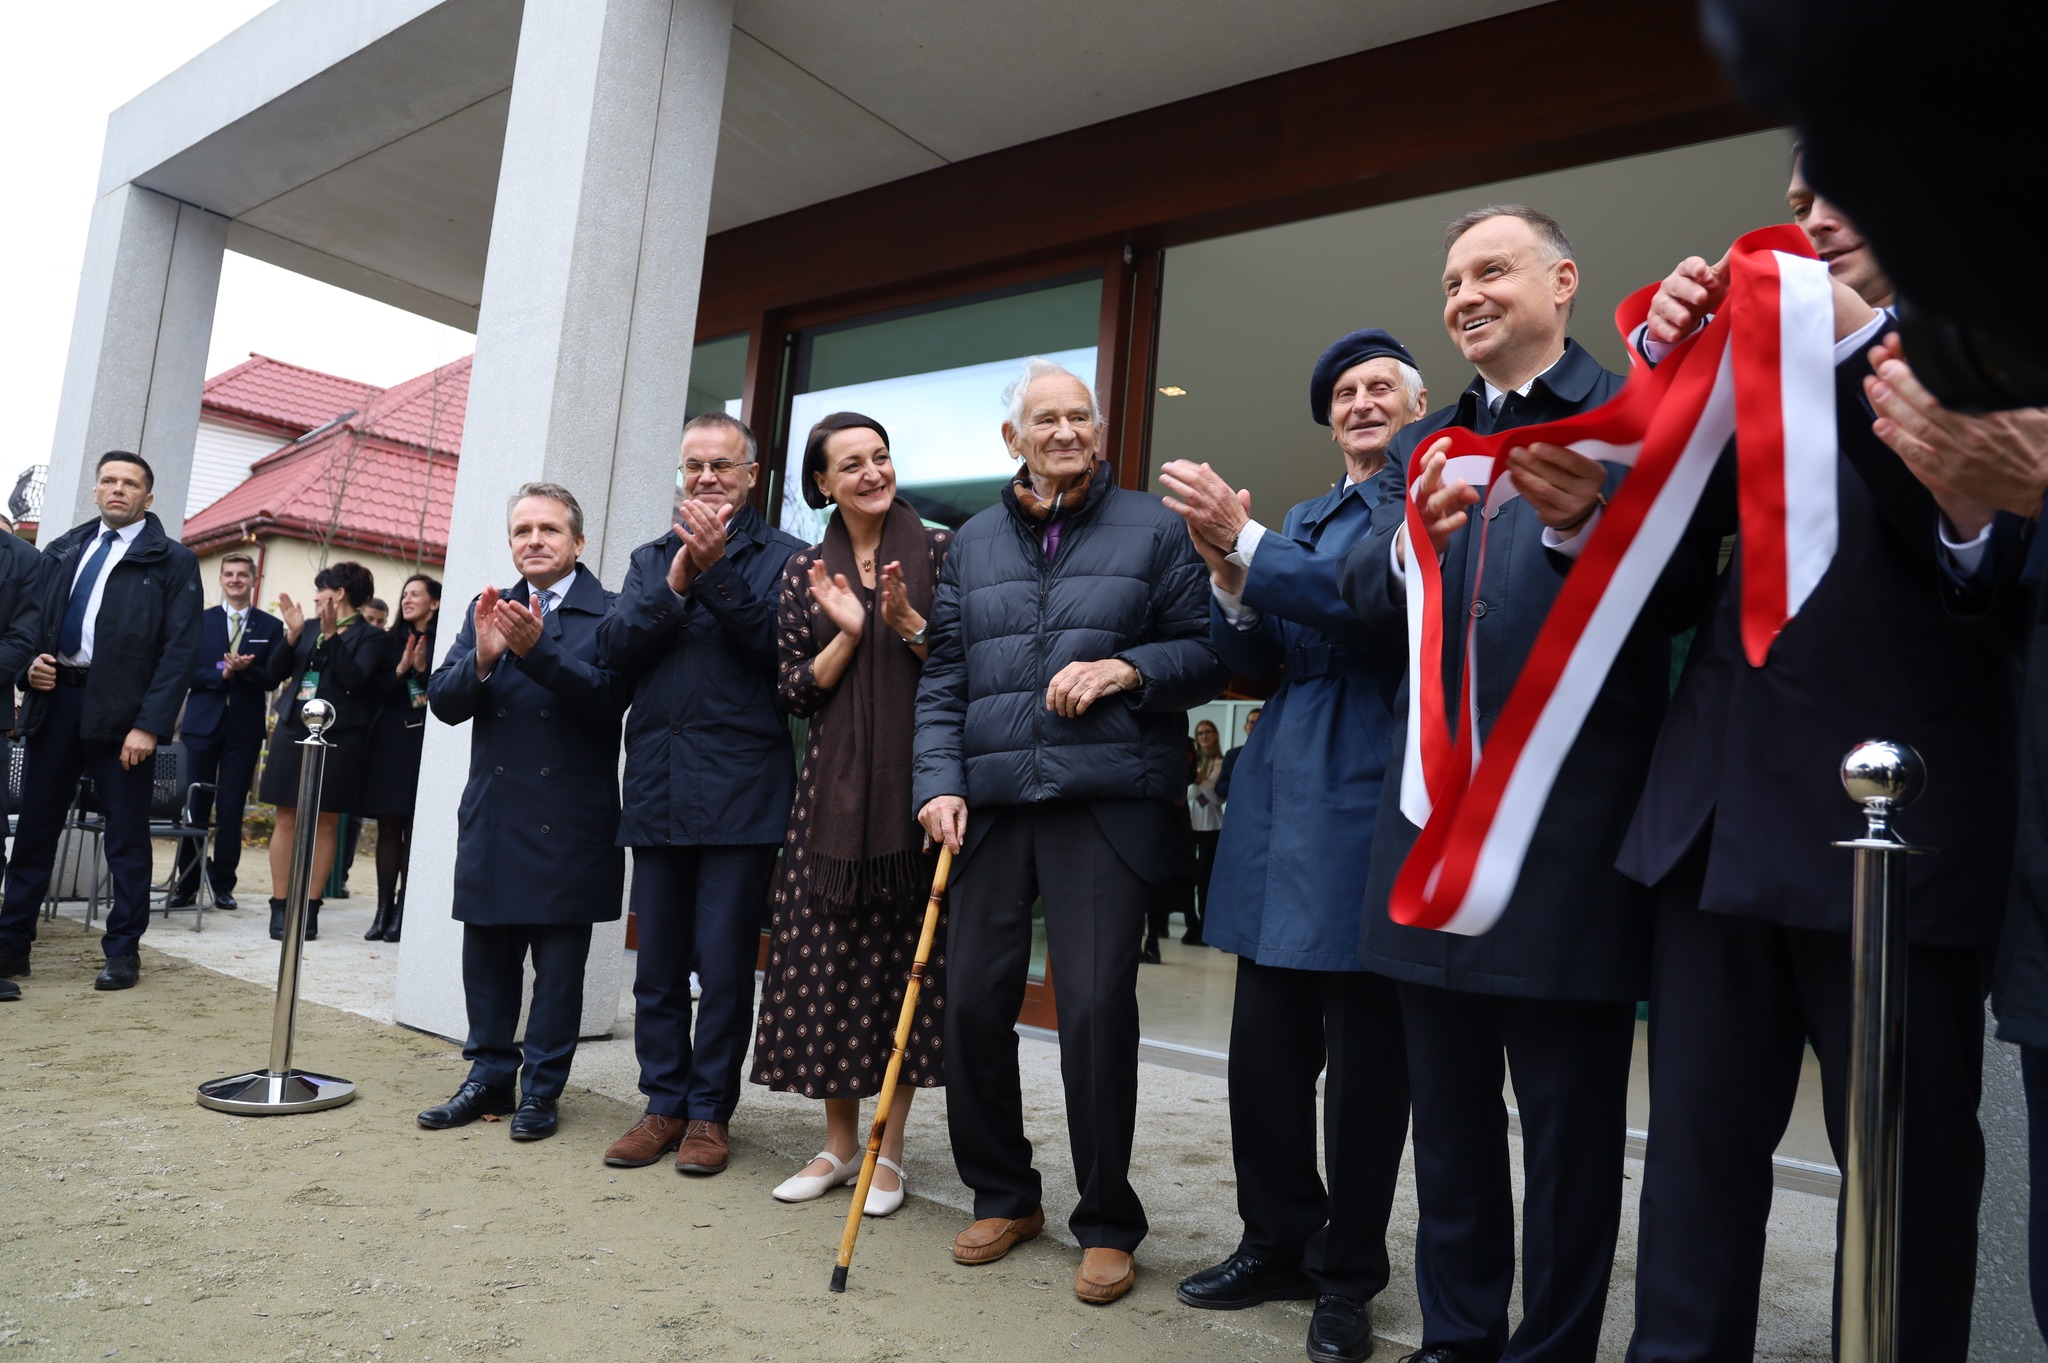 Uroczyste otwarcie Muzeum Dom Rodziny Pileckich oraz przecięcie wstęgi z udziałem Prezydenta RP, Andrzeja Dudy.